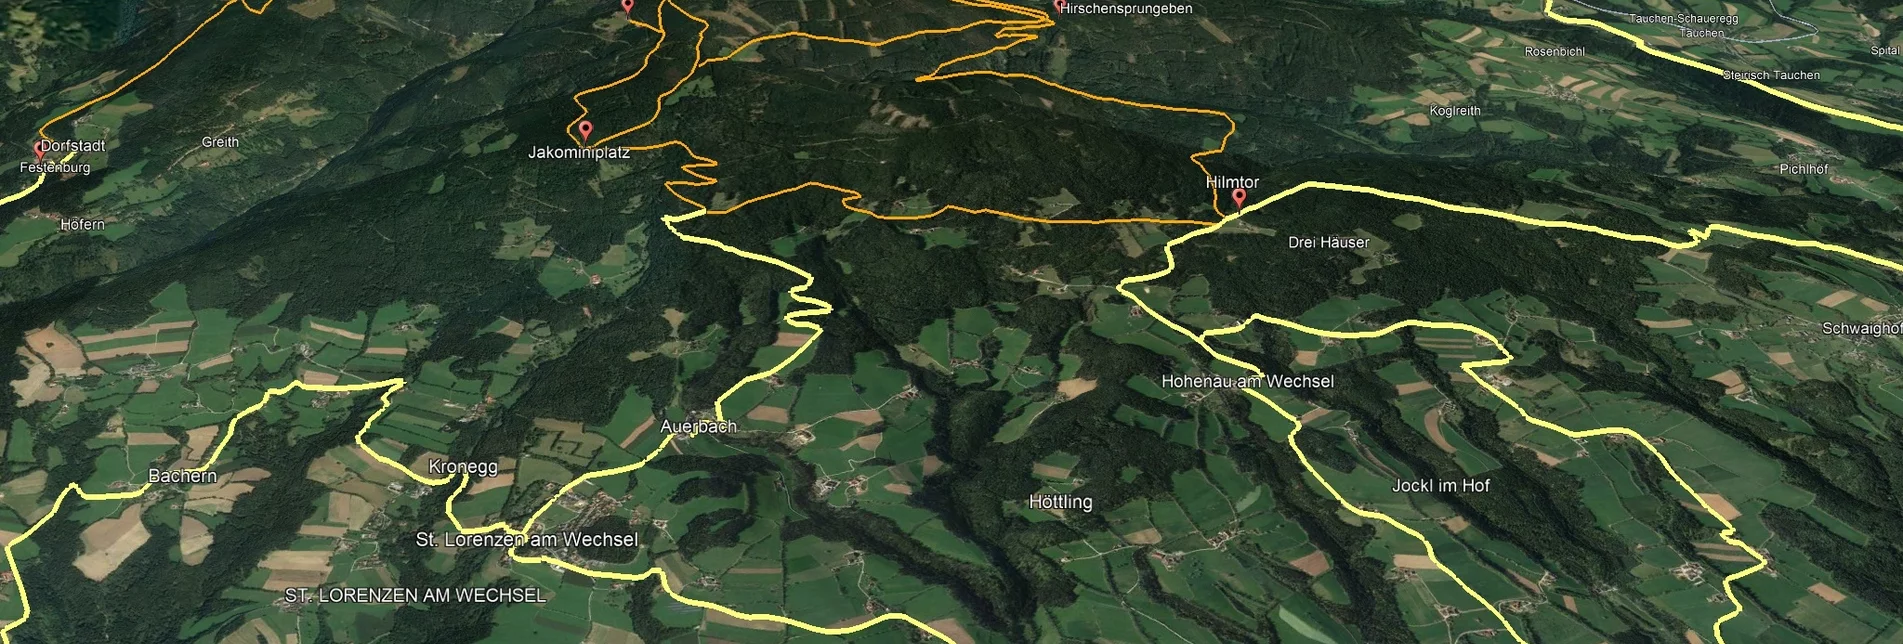 Mountainbike VORSCHAU Steirische Wexl Trails - Zubringer Pinggau über Friedberg zum Hilmtor - Touren-Impression #1 | © Verein Tourismusentwicklung Steirischer Wechsel